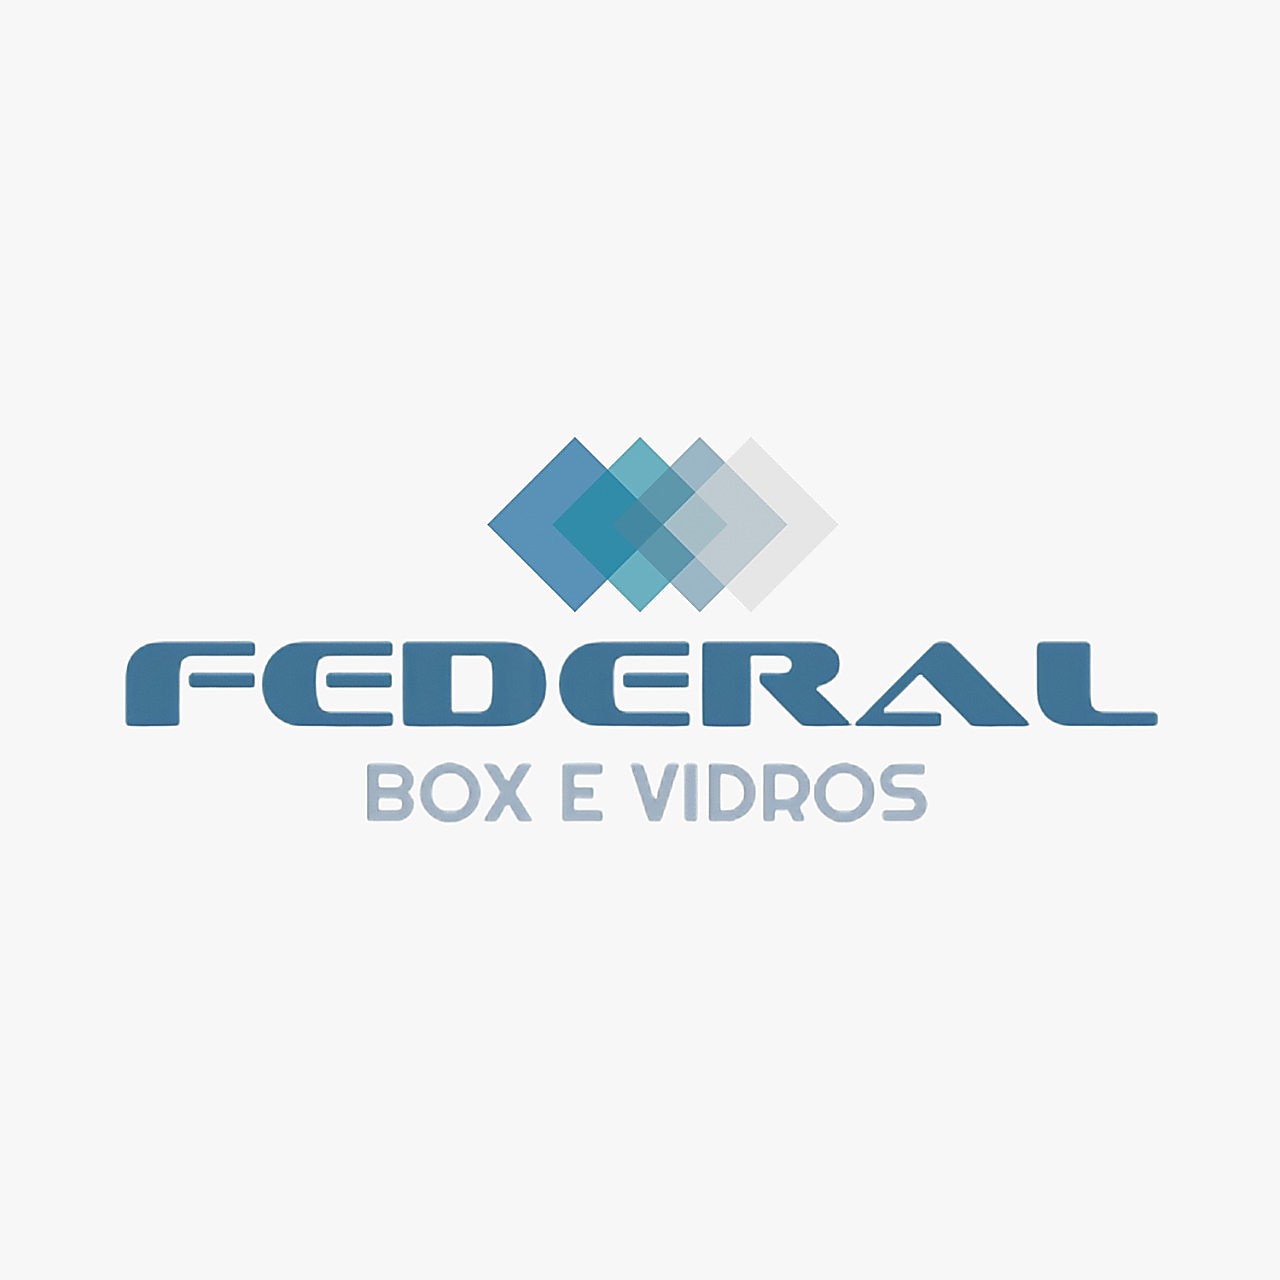 Federal Box e Vidros